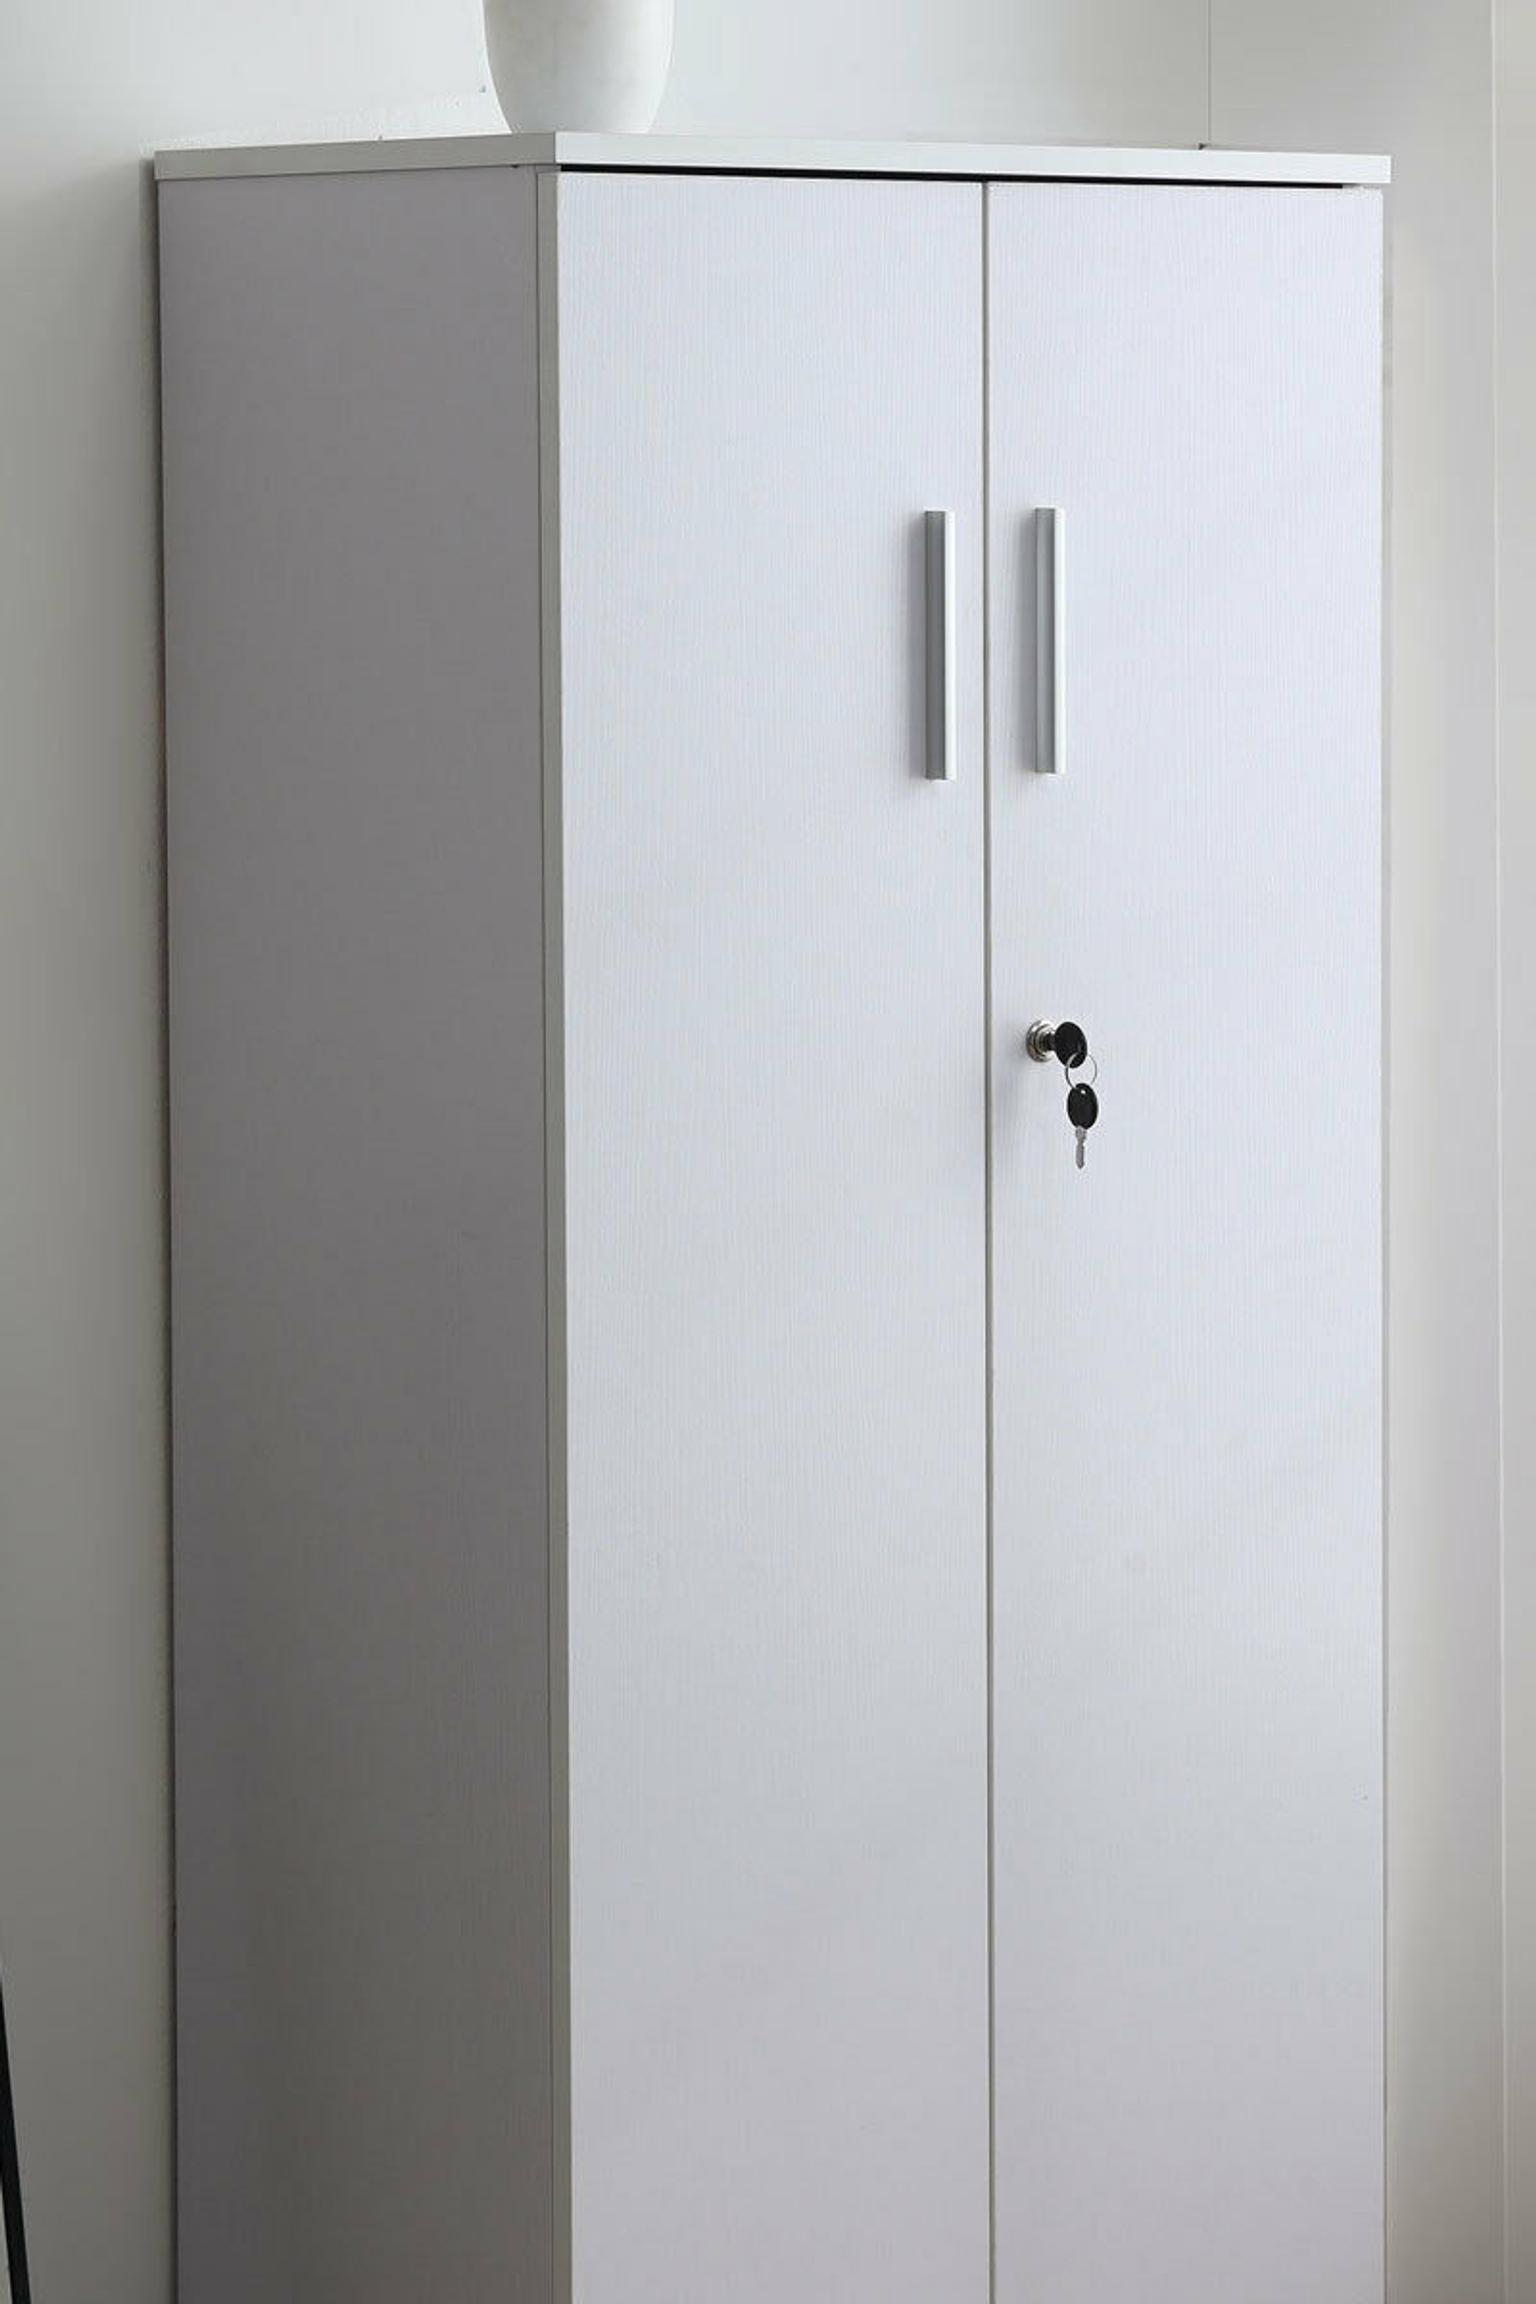 3 Shelf Cabinet Cupboard Storage Lockable In Ol12 Rochdale Fur 62